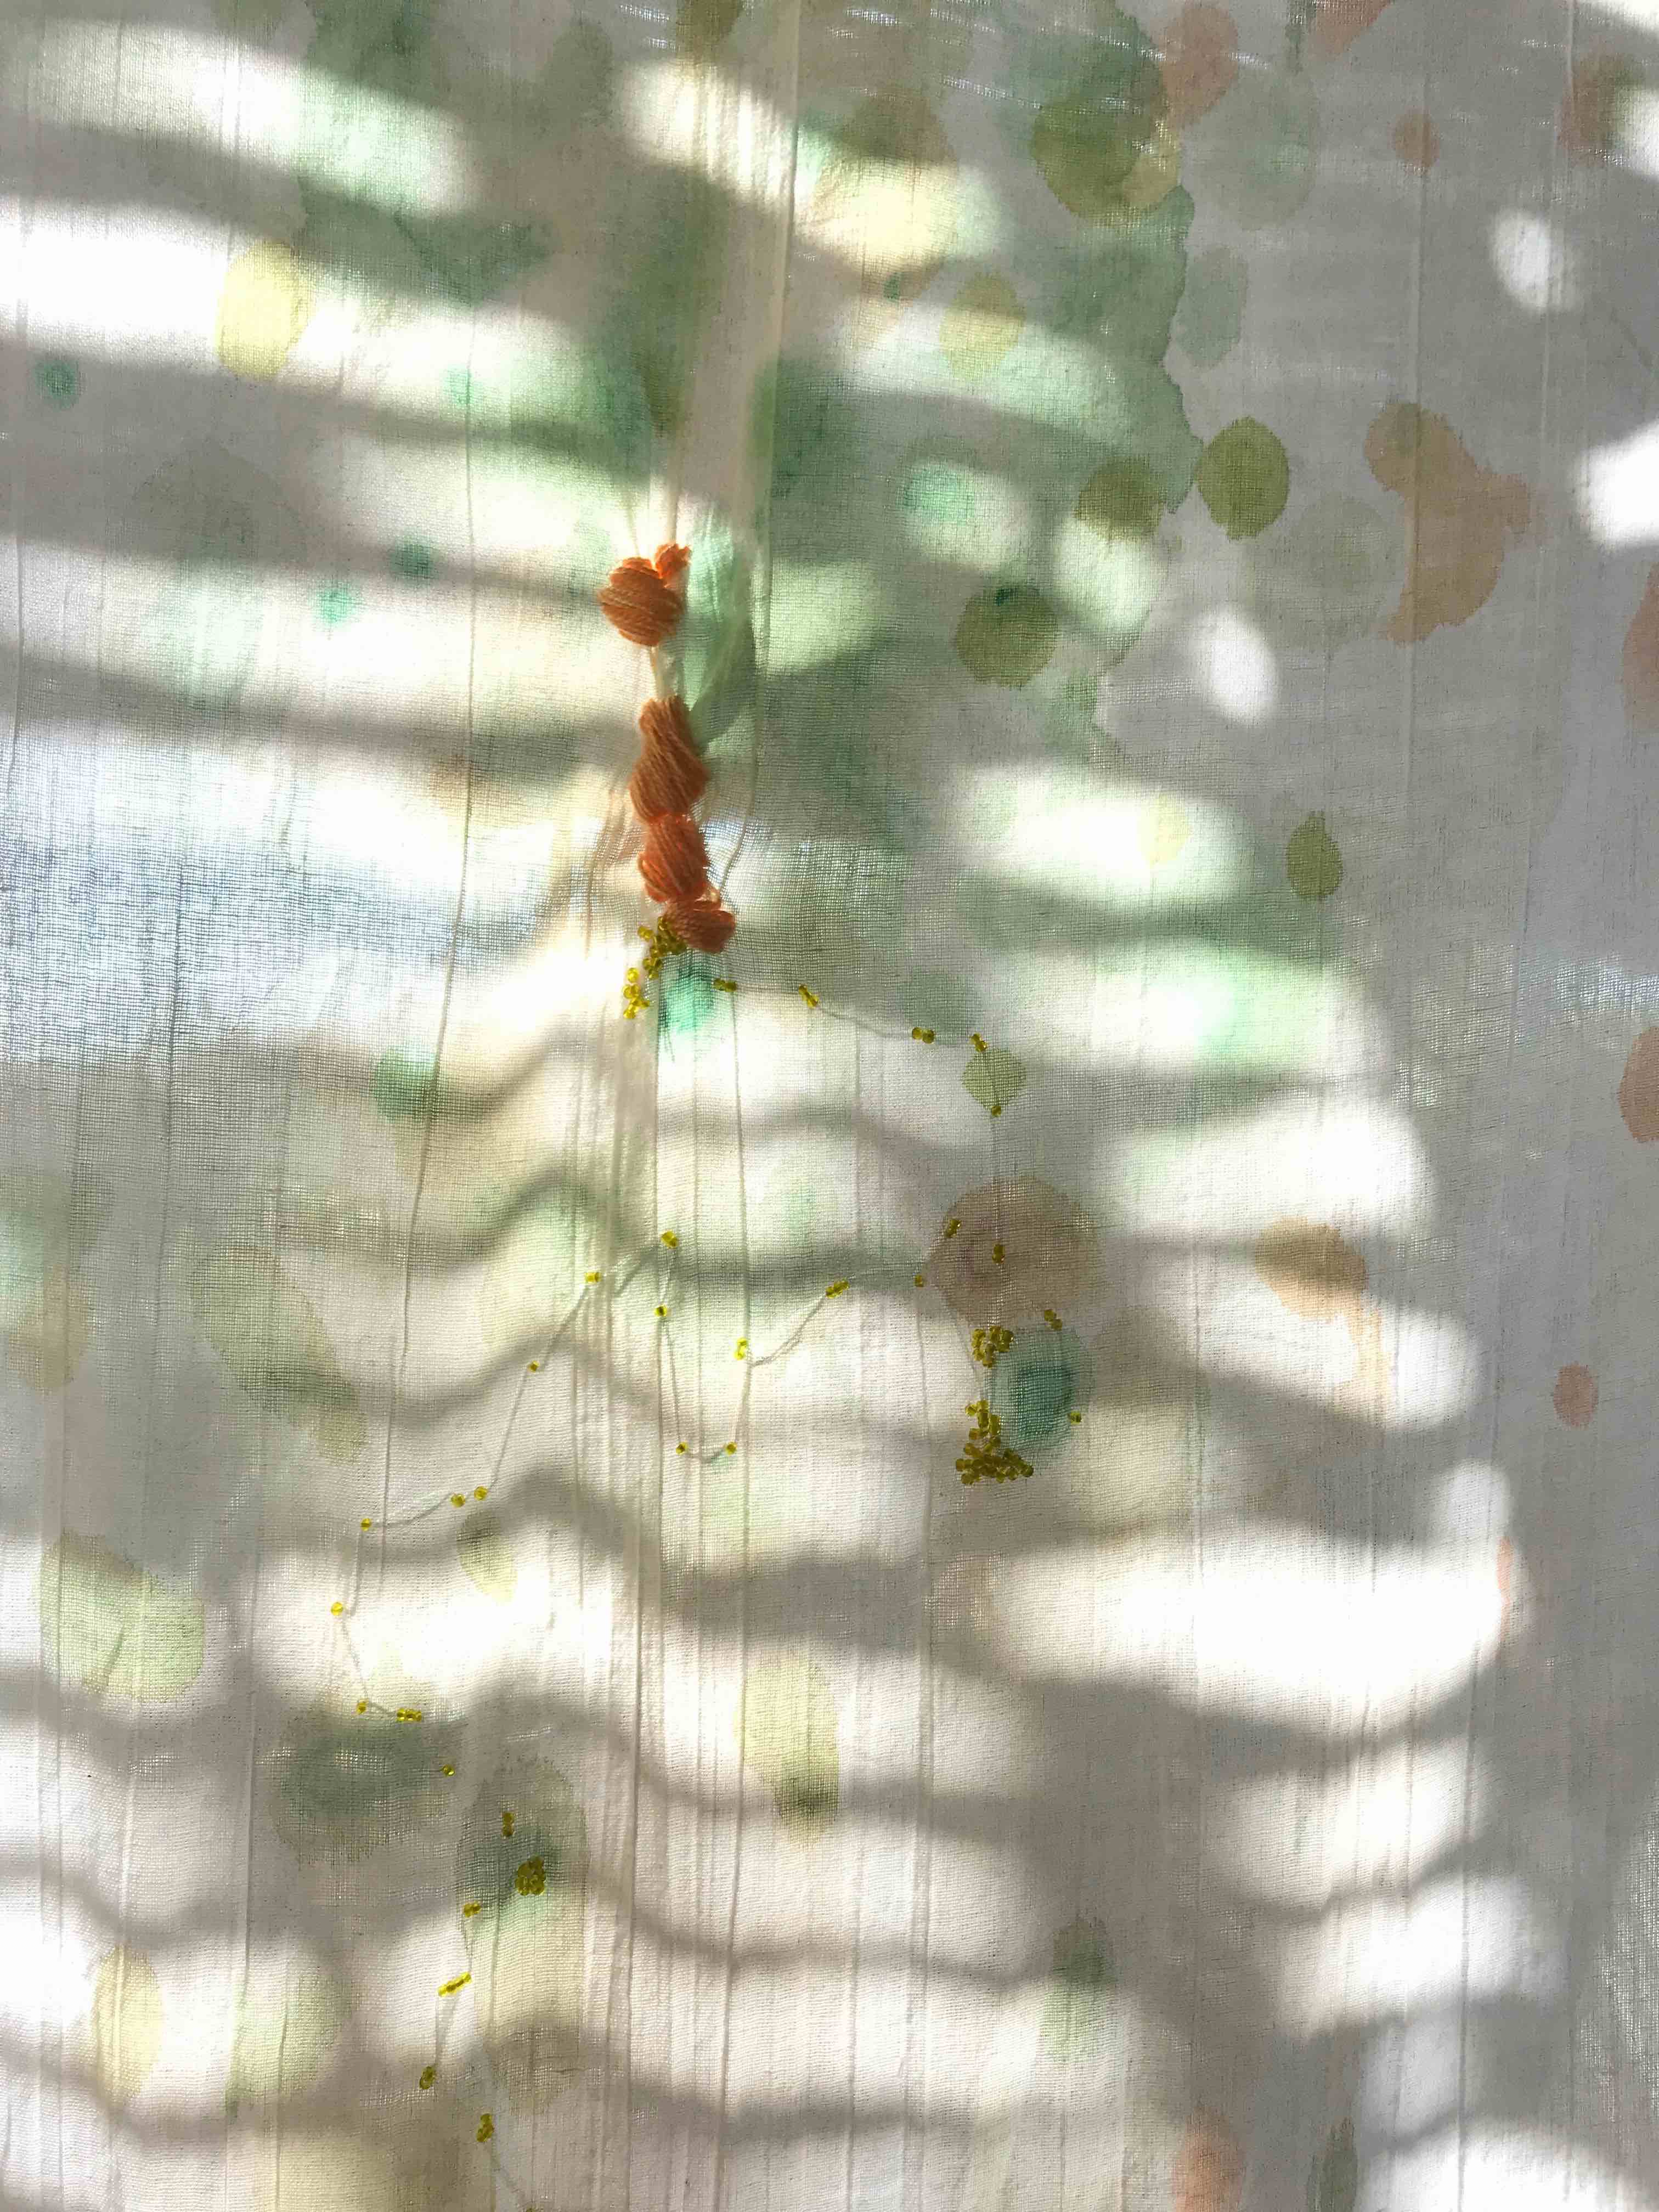 Sofía Fernández Díaz, installation detail made in Estancia Las Playitas Todos Santos. Natural dyes, shadows, embroidery and desert quartz, november 2019 (work in process). Photo: Sofía Fernández Díaz